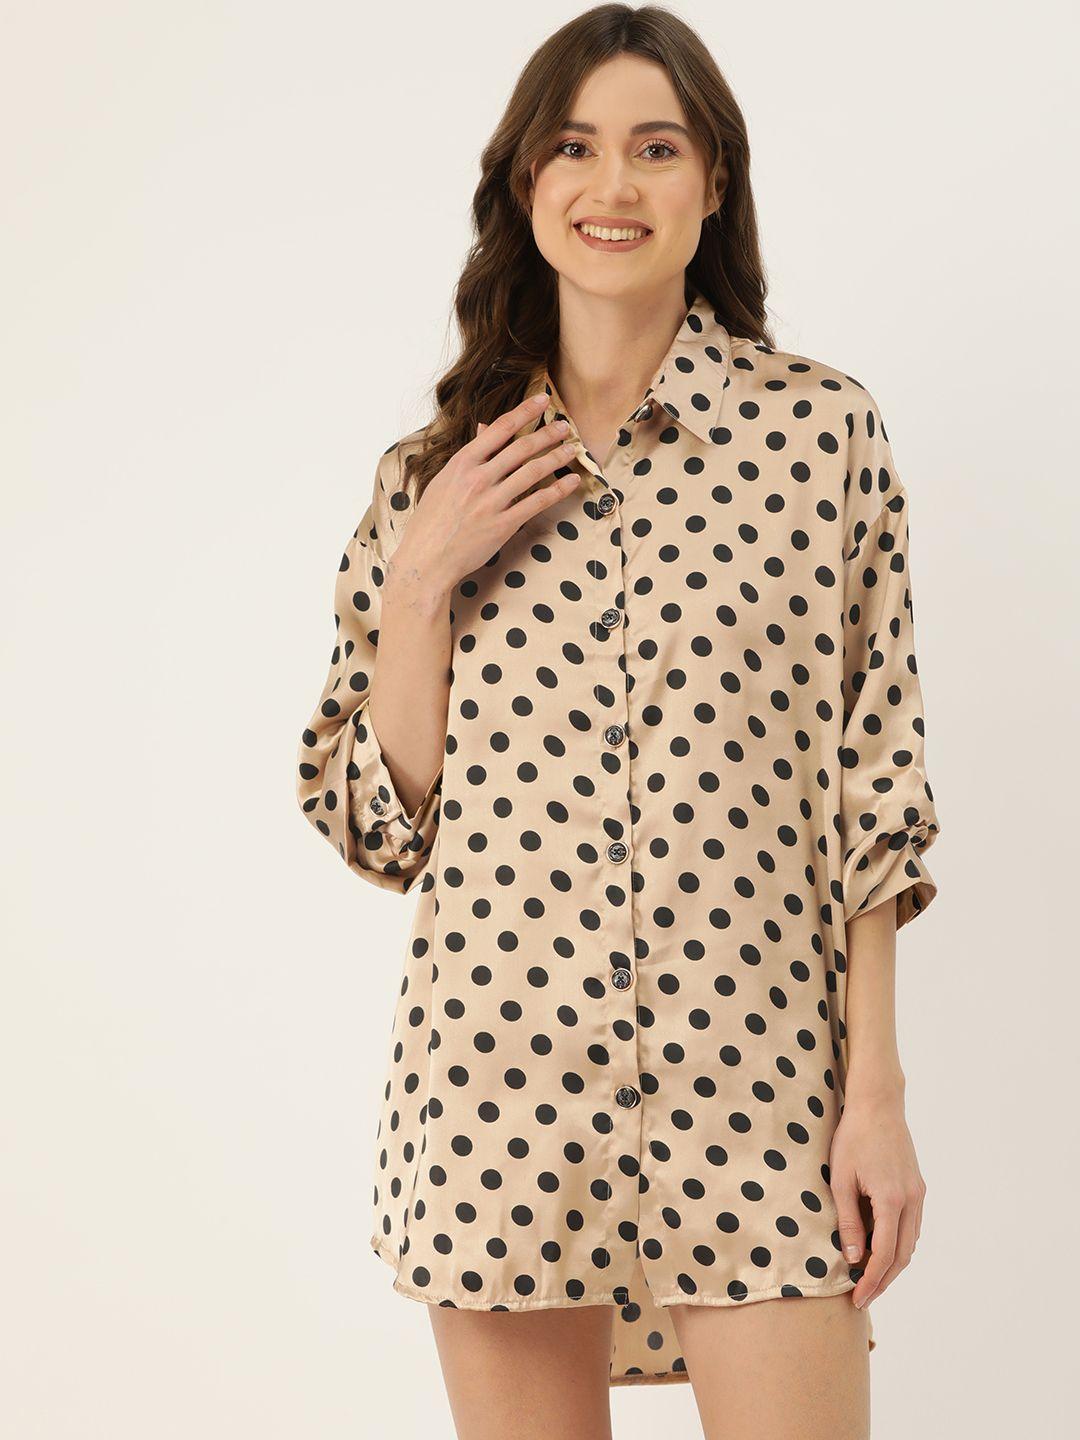 ms.lingies polka dots printed shirt nightdress